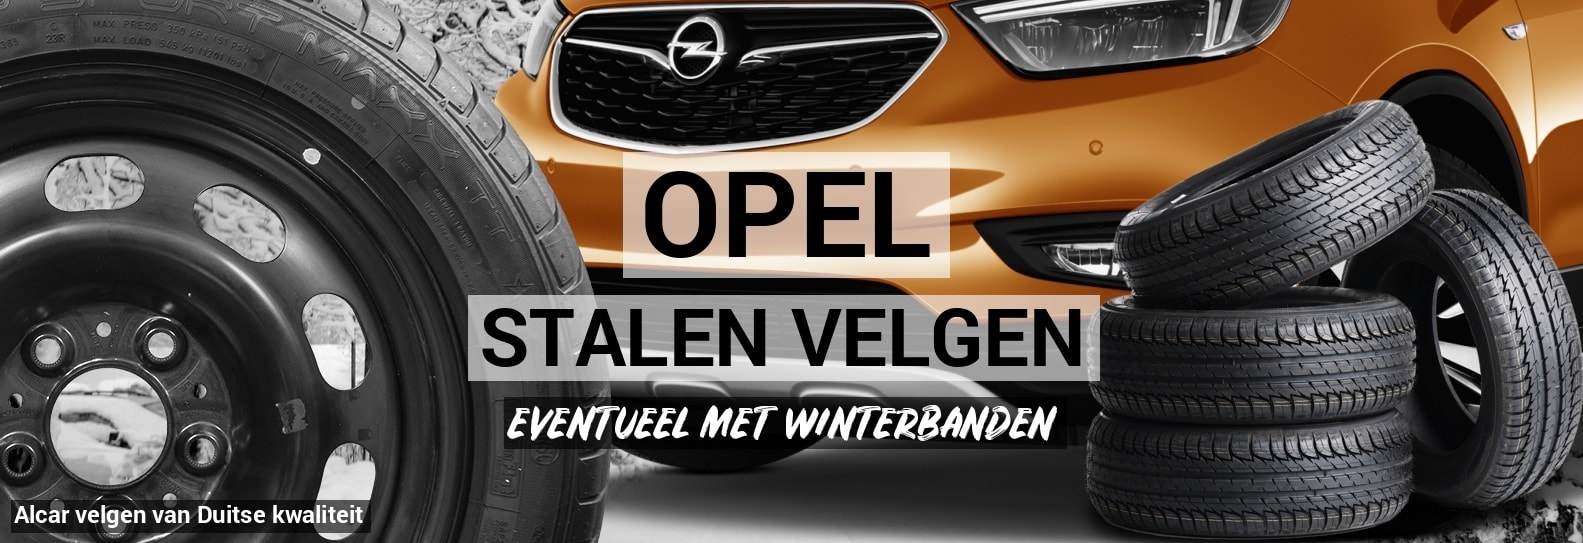 Gespierd Zweet paperback Stalen velgen Opel - Autobanden Prijsvechter